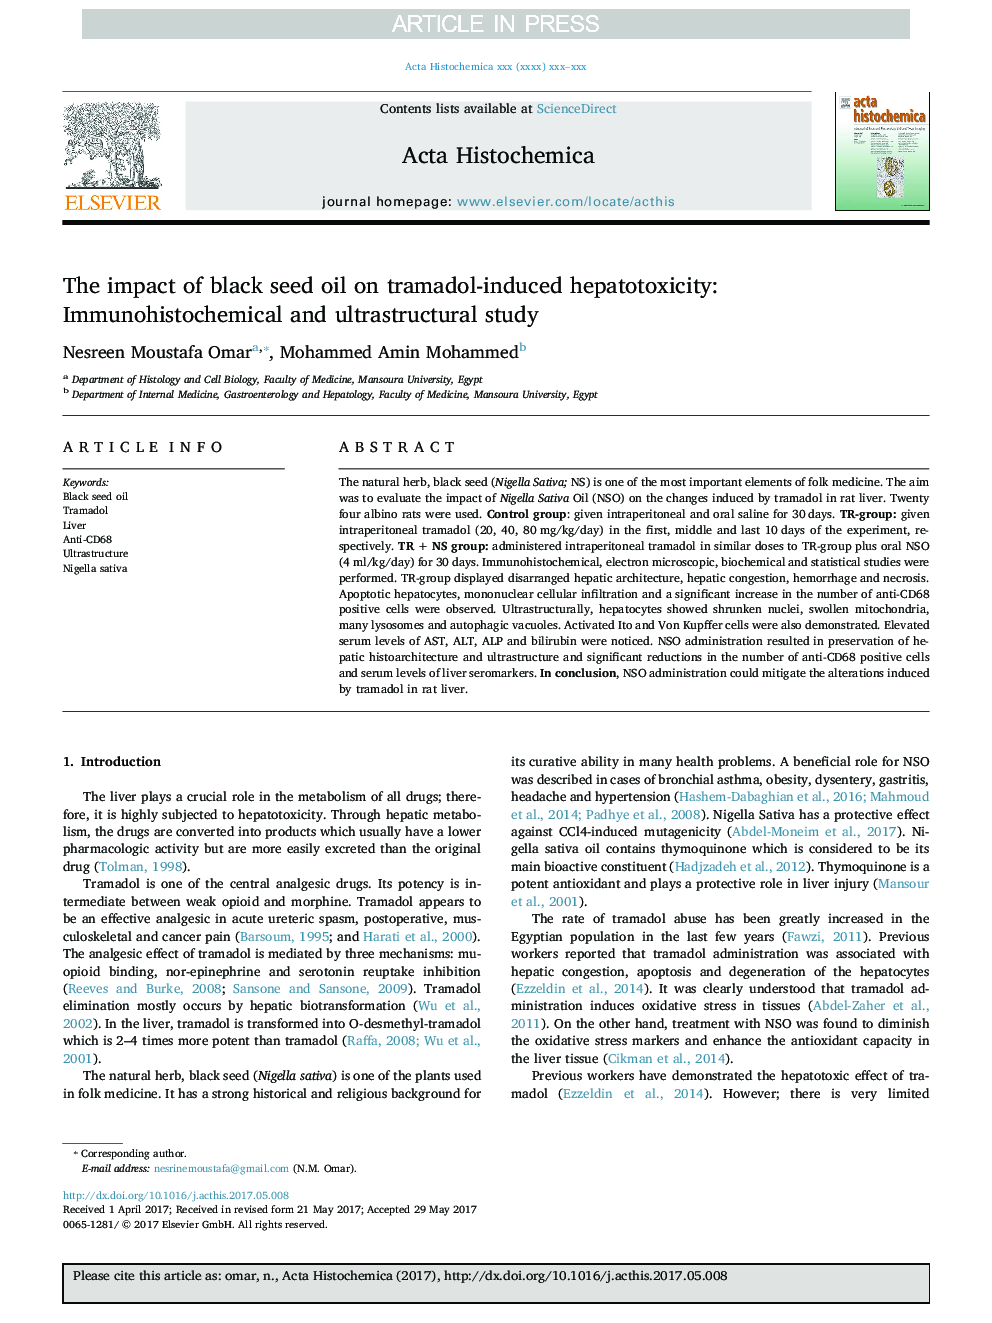 تاثیر روغن دانه سیاه دانه بر سمیت گوارشی ناشی از ترامادول: مطالعه ایمونوهیستوشیمی و فراوانی 